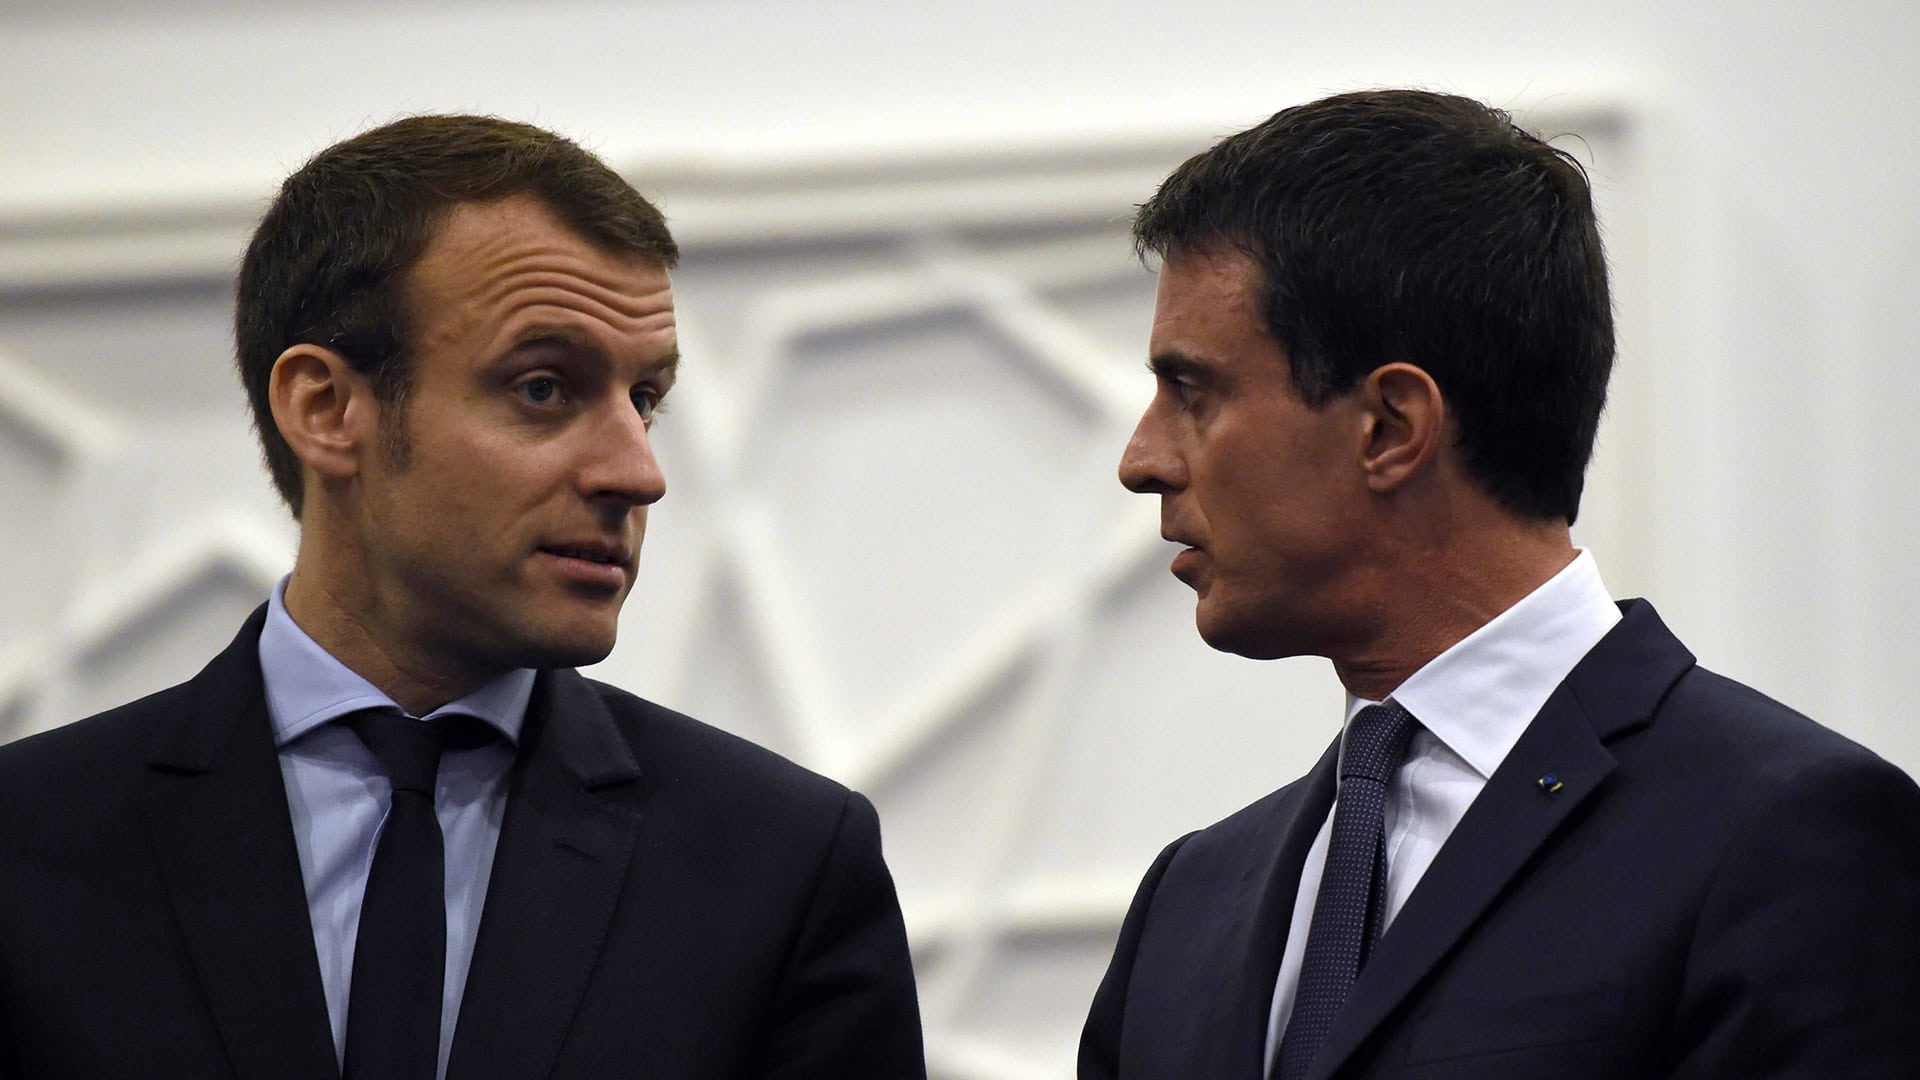 El ex primer ministro francés Valls votará por Macron para evitar la victoria de Le Pen